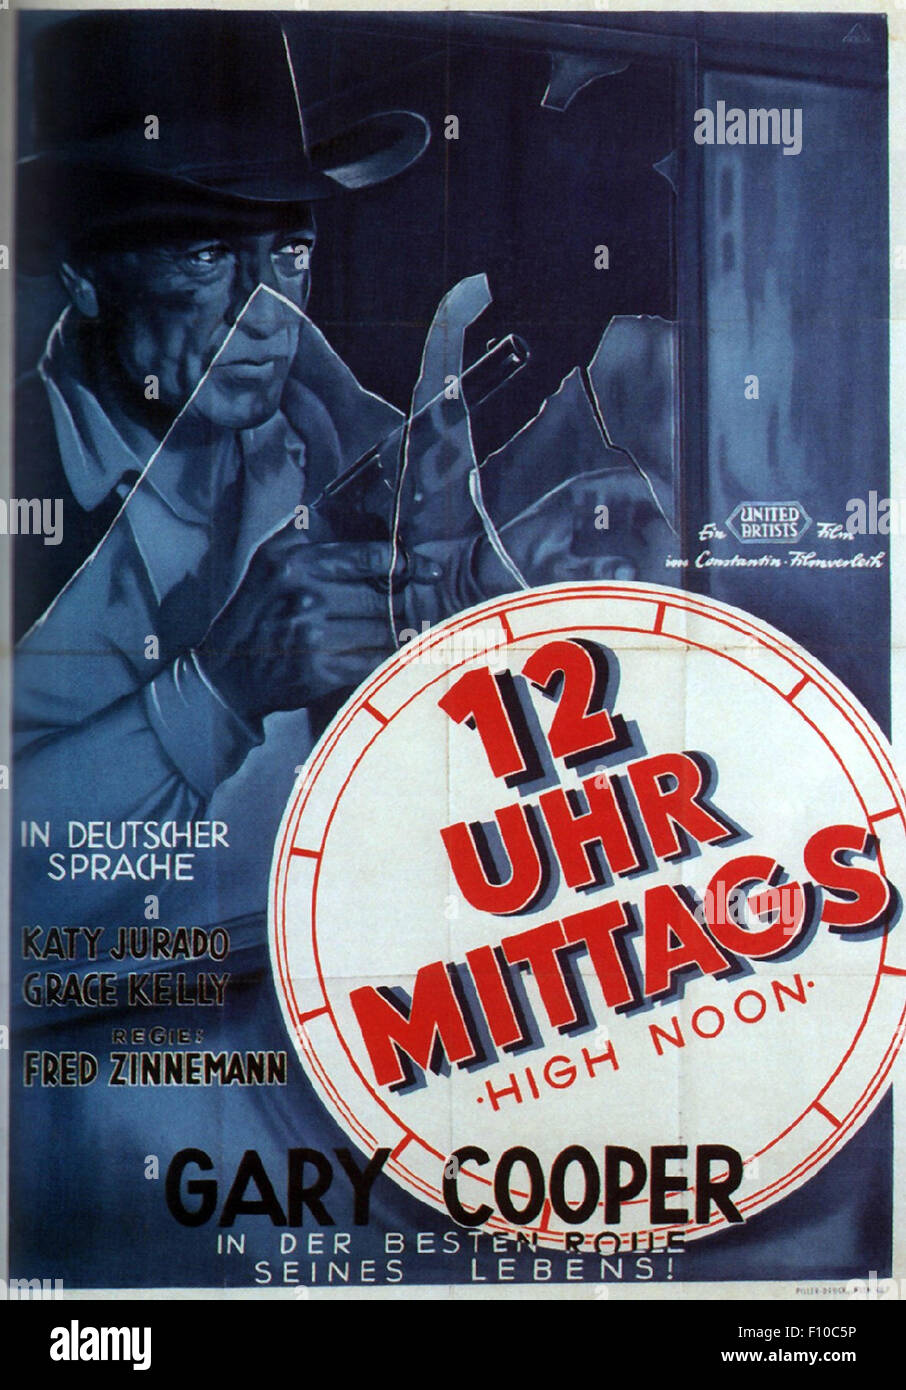 High Noon - carteles de cine alemán Foto de stock